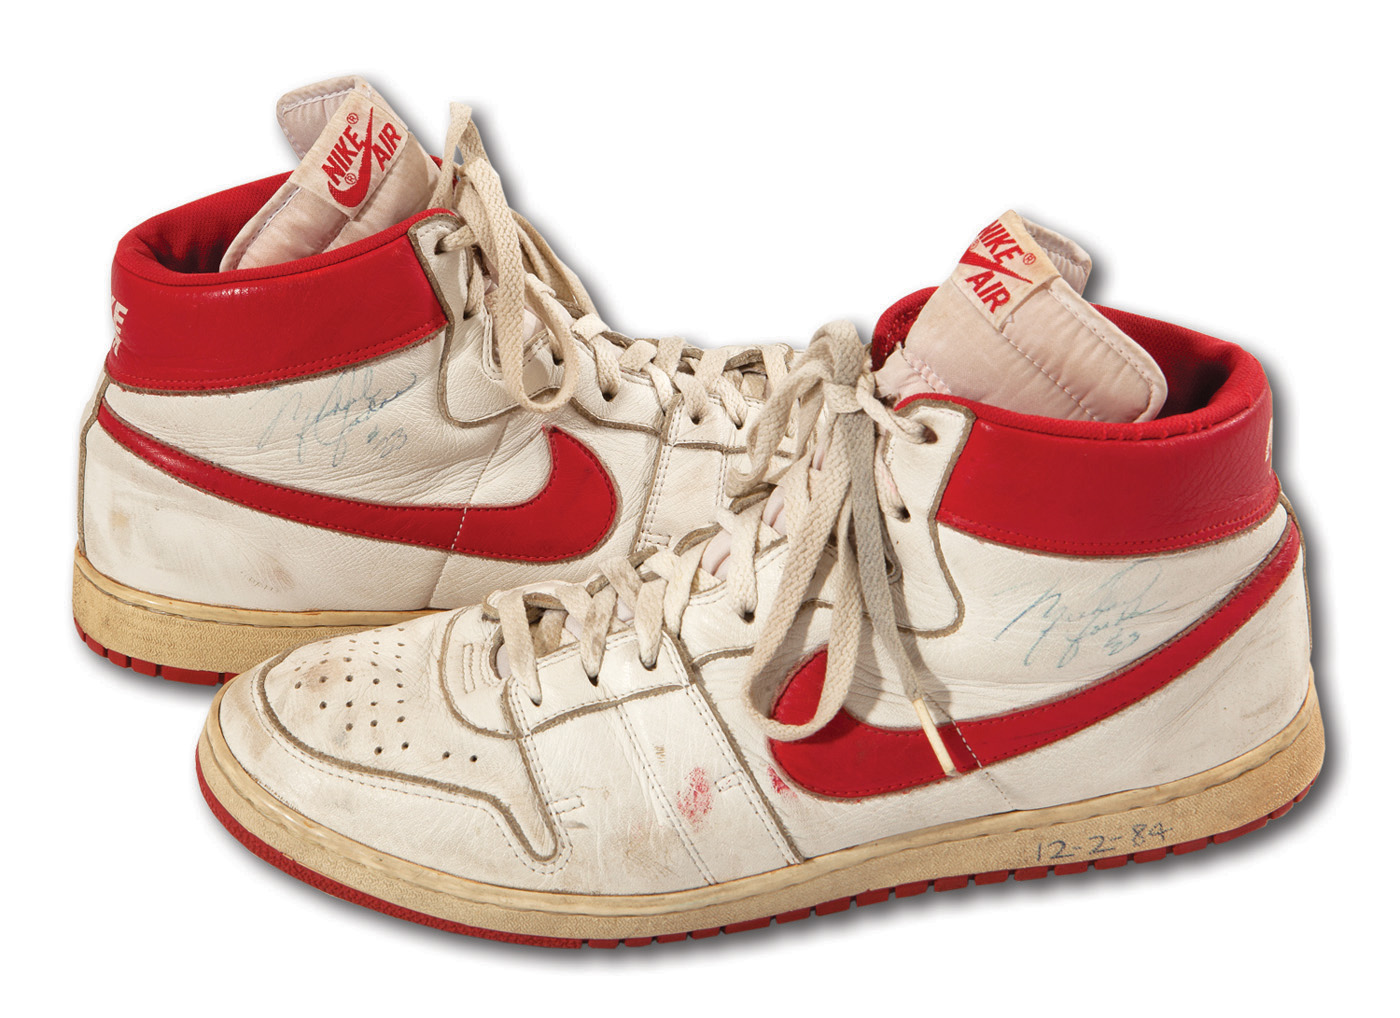 Michael Jordan's Nike Air Jordan Sneakers Sold at Auction